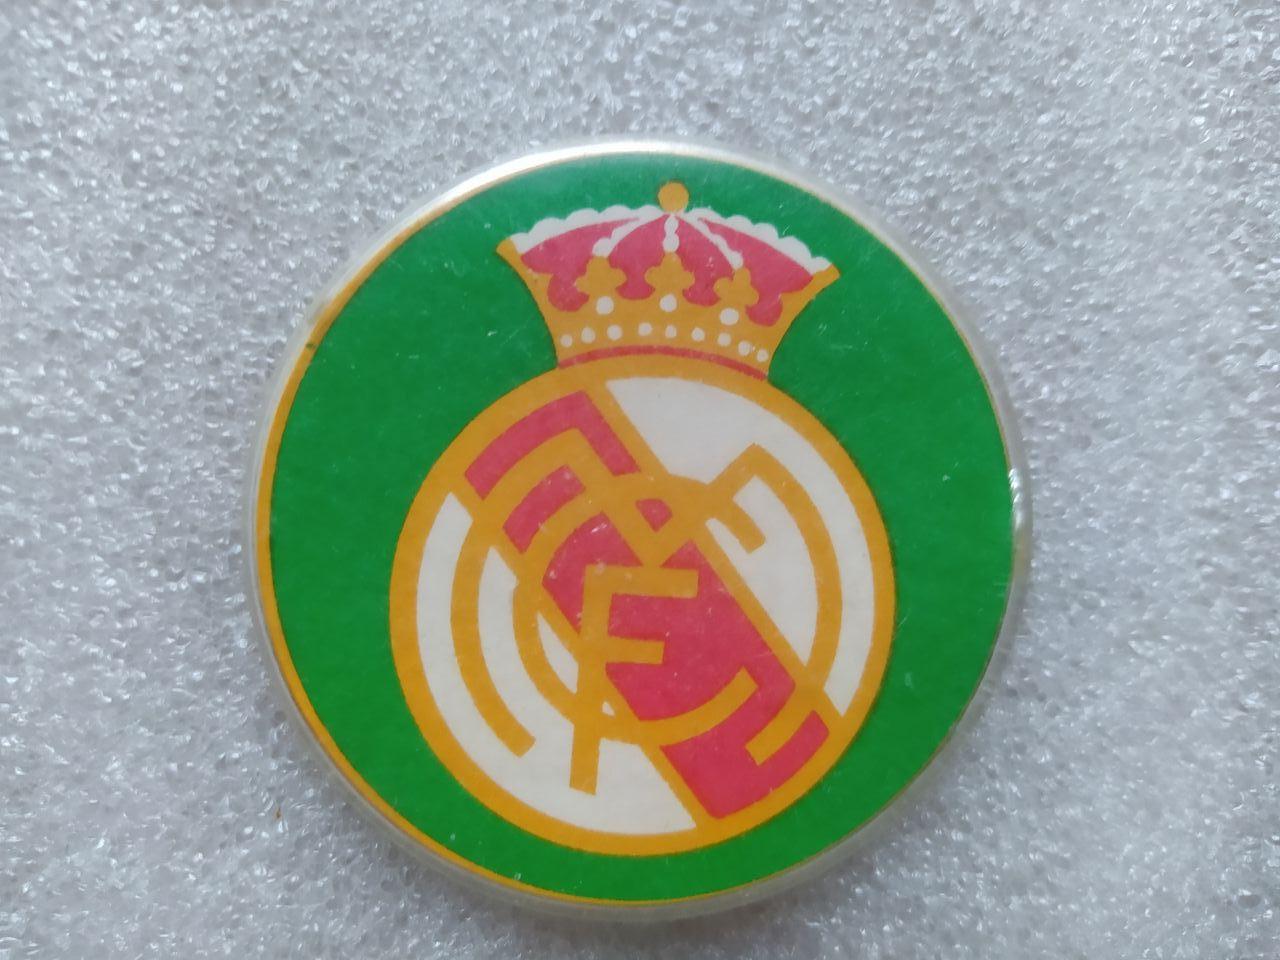 Футбольный клуб Реал Мадрид Испания из серии союзный выпуск пластмасса